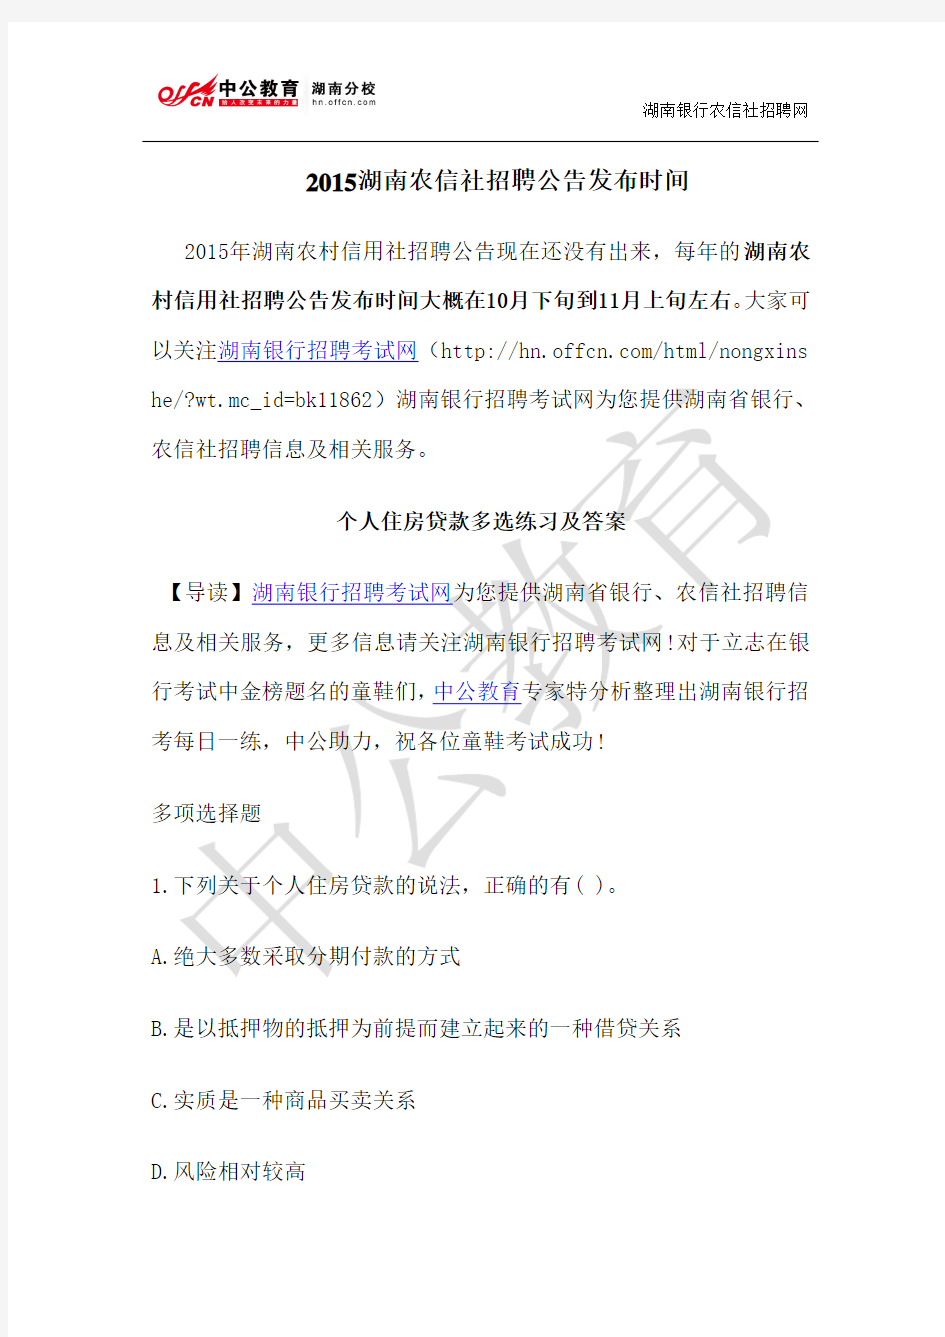 2015湖南农信社招聘公告发布时间